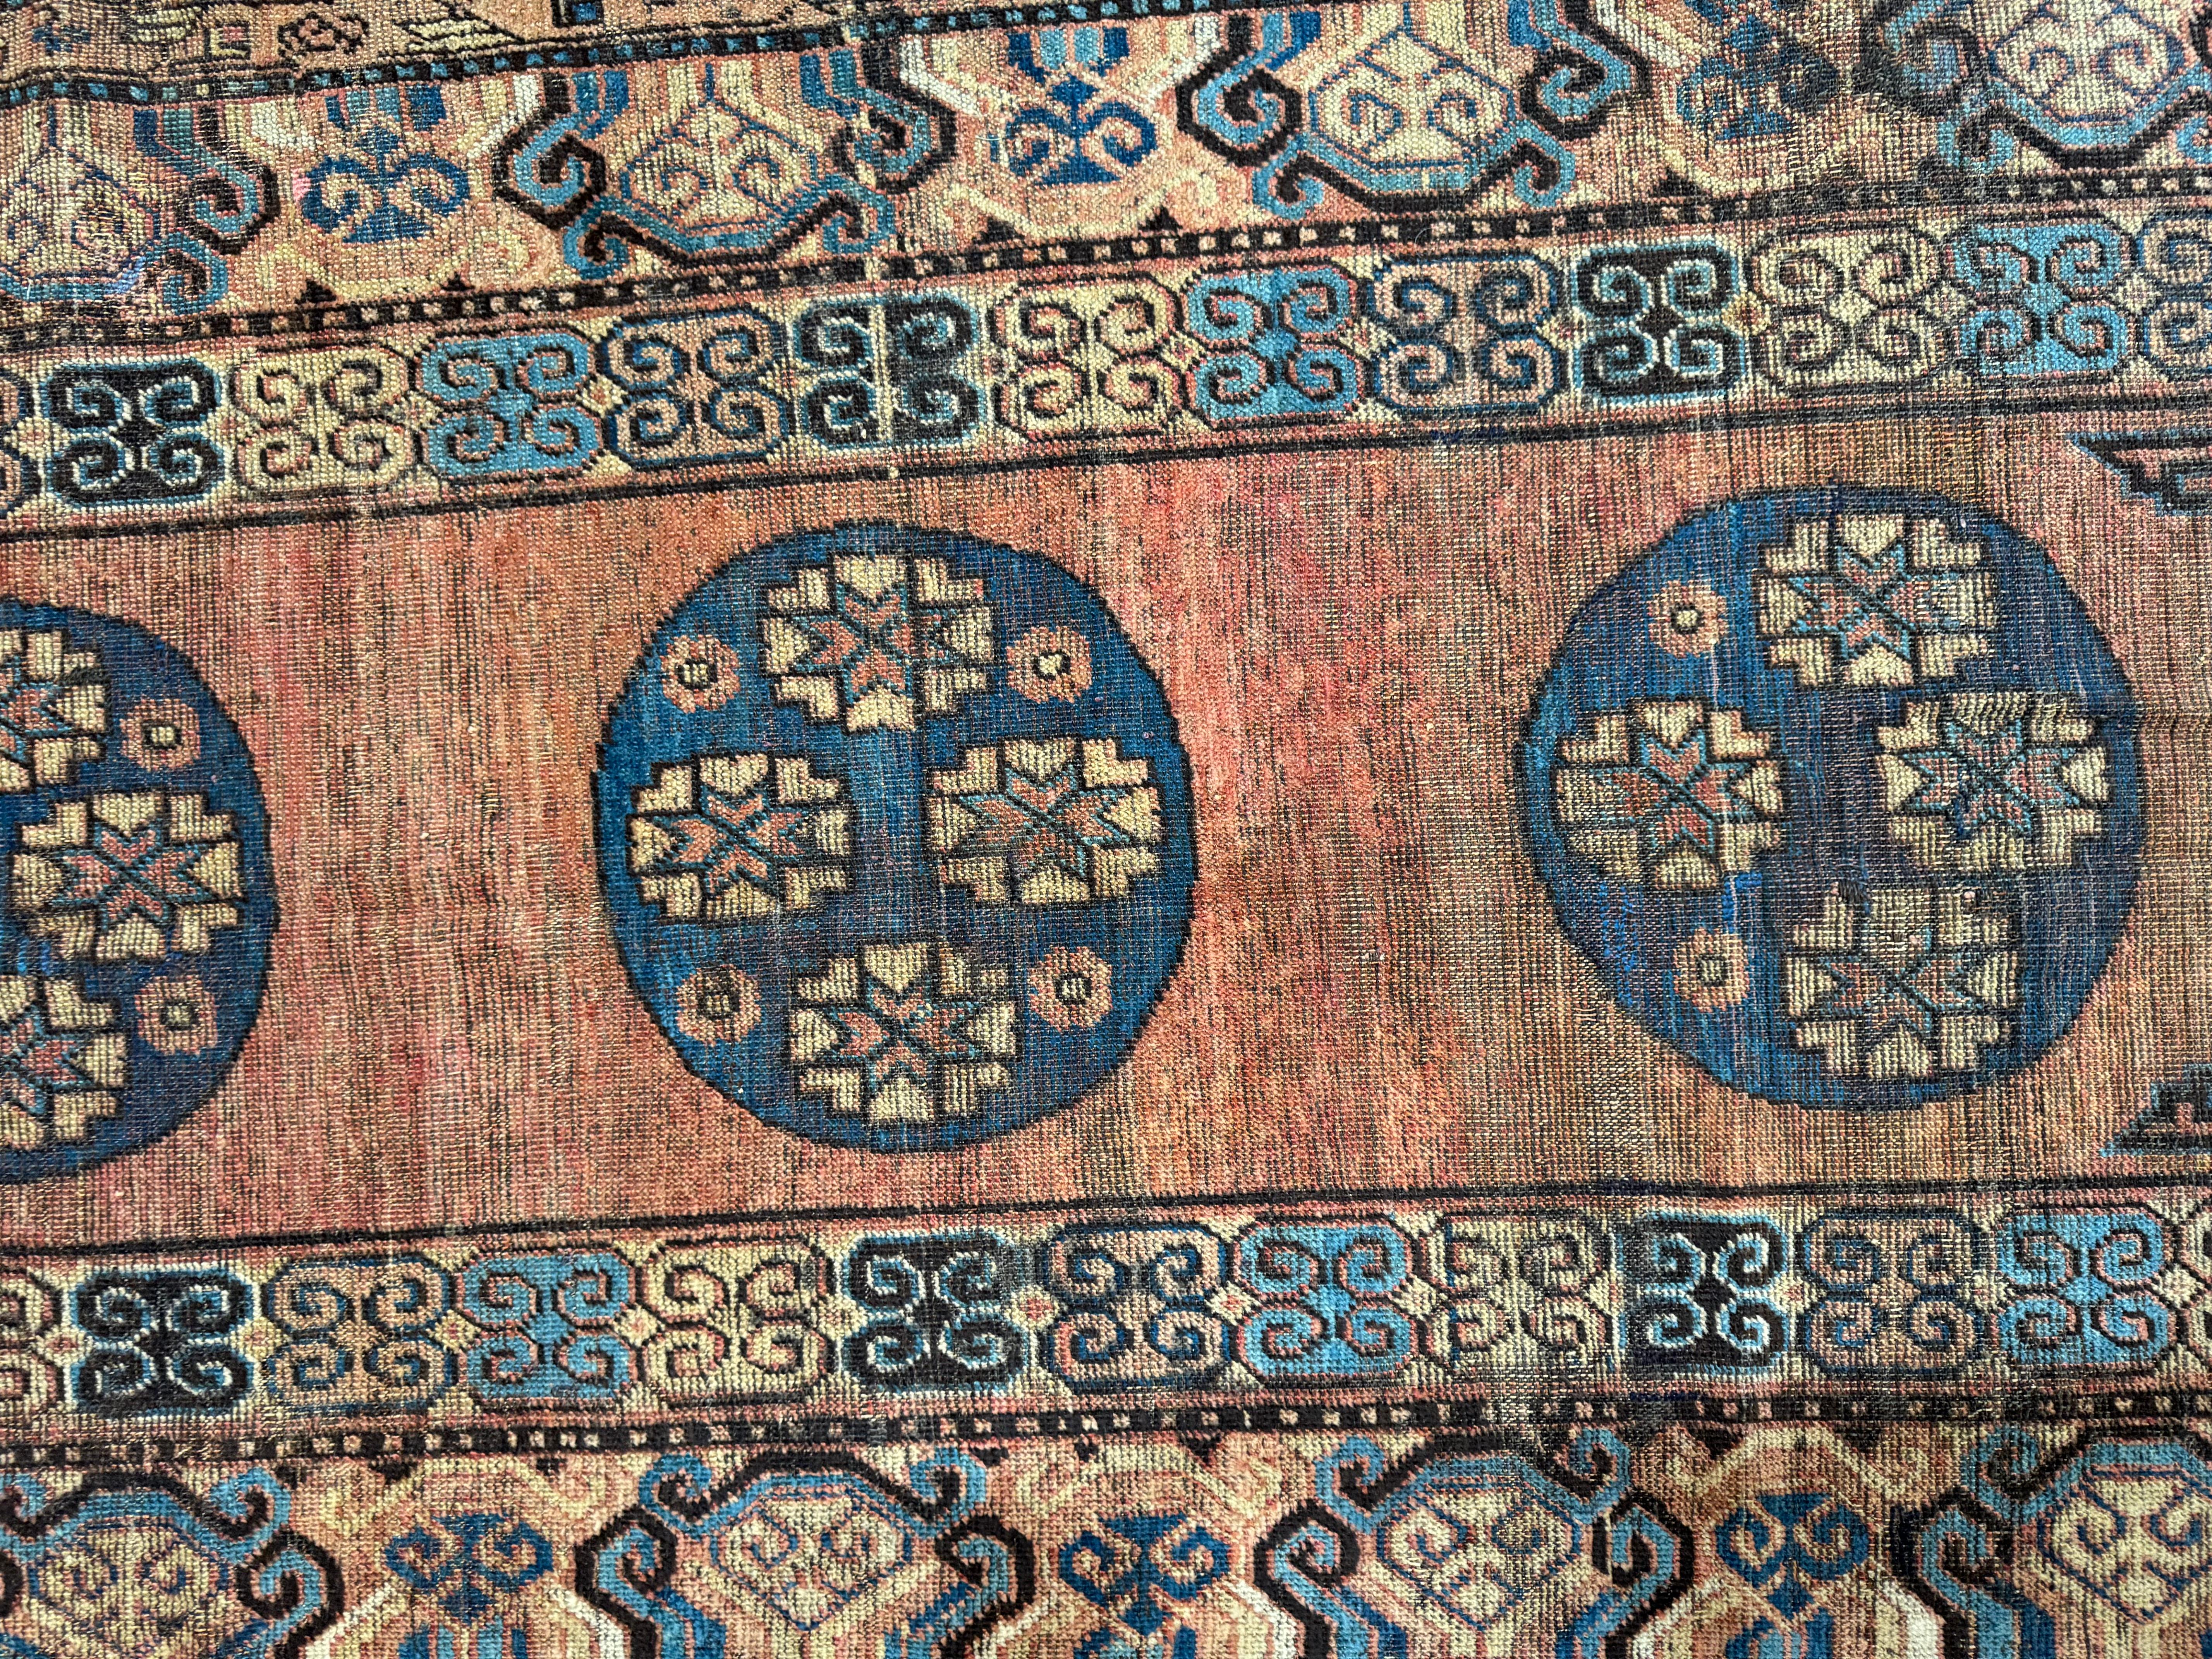 Héritage raffiné : Tapis Samarkand du 19ème siècle, 8.6' x 3.9' - Donnez à votre intérieur un charme intemporel et une touche américaine avec cet exquis tapis ancien. Fusion de l'histoire et de l'élégance, il ajoute une touche de sophistication à